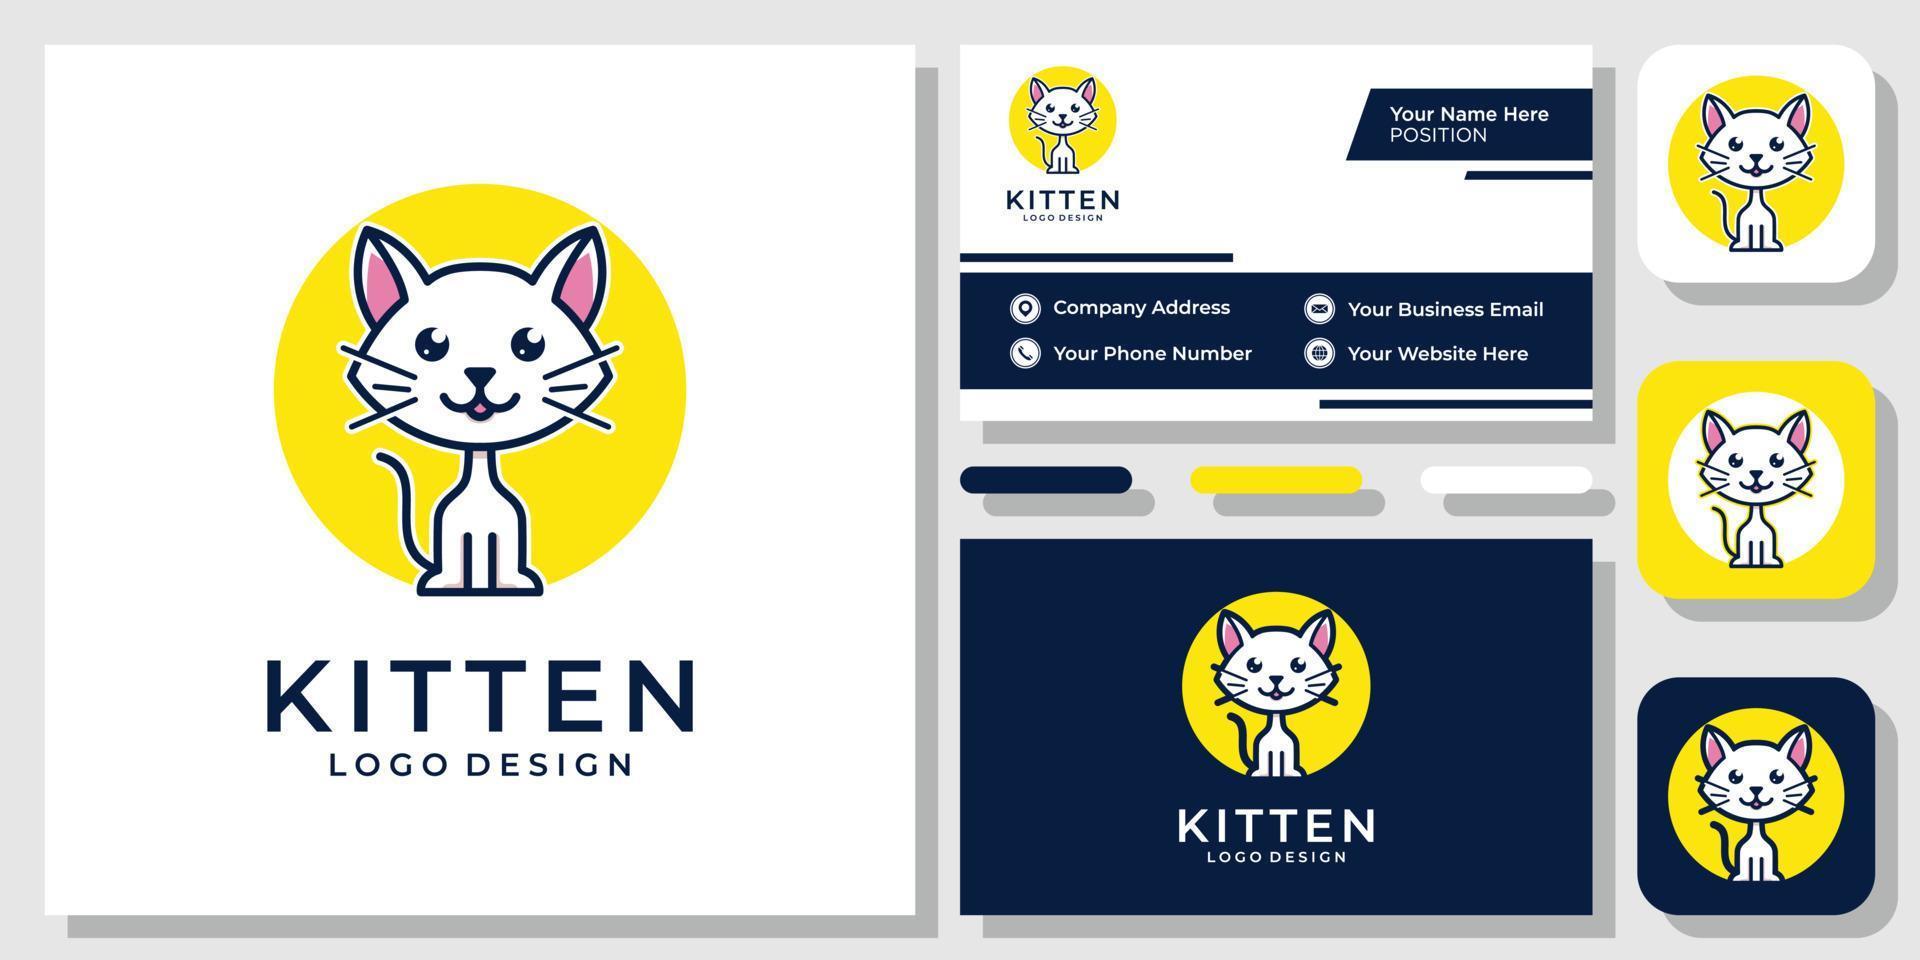 katje schattig cartoon kat huisdier grappig dier puppy pictogram modern logo ontwerp met sjabloon voor visitekaartjes vector